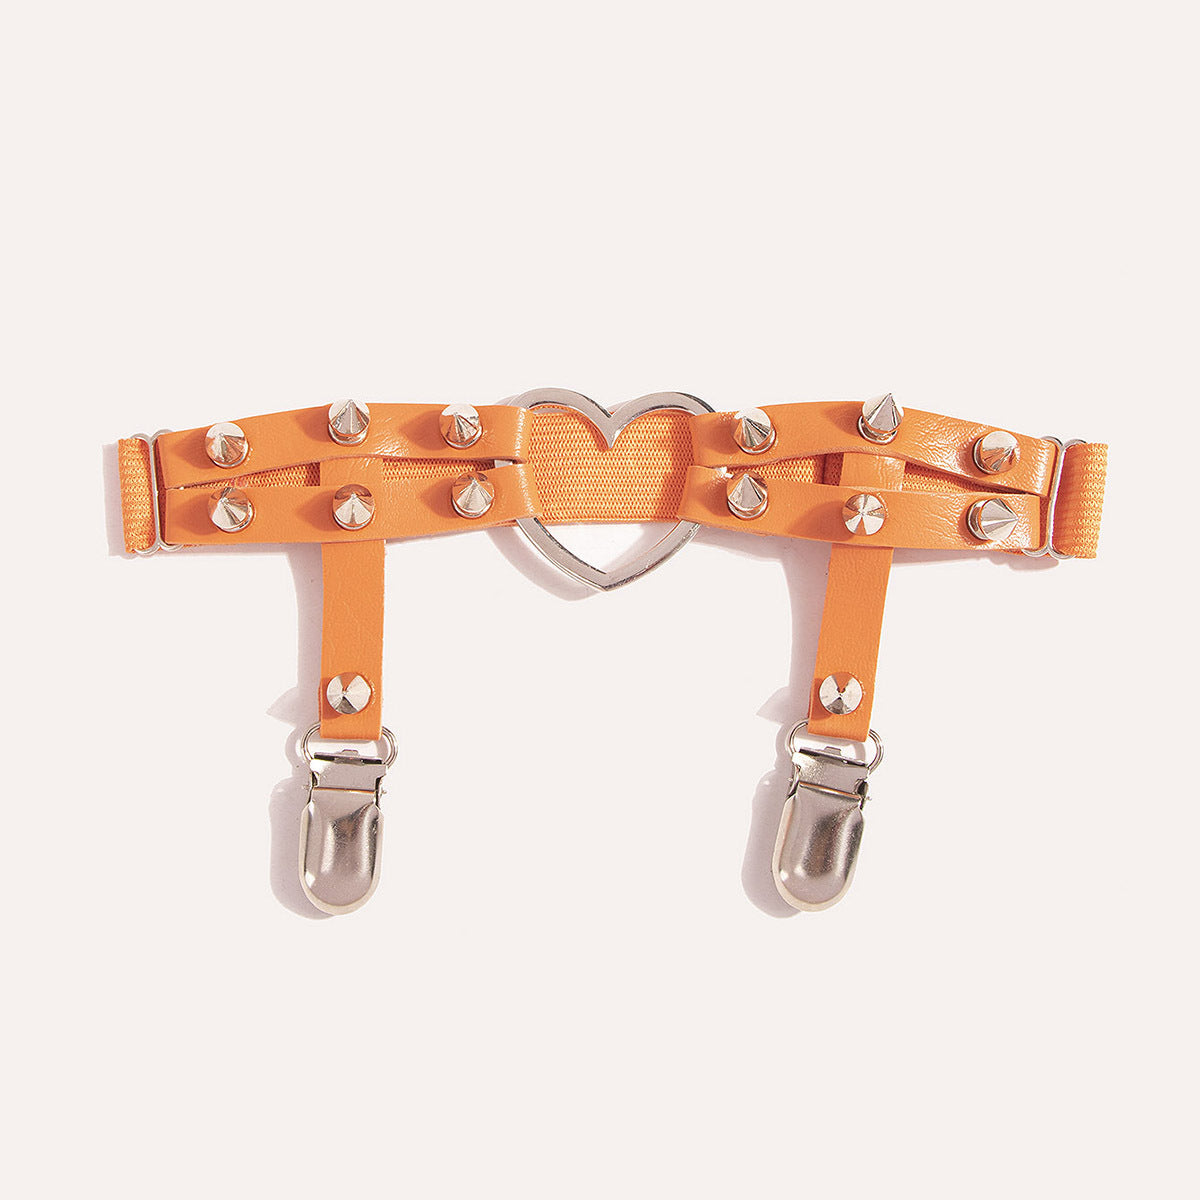 Harness na udo z kolcami - Pomarańczowy / Uniwersalny